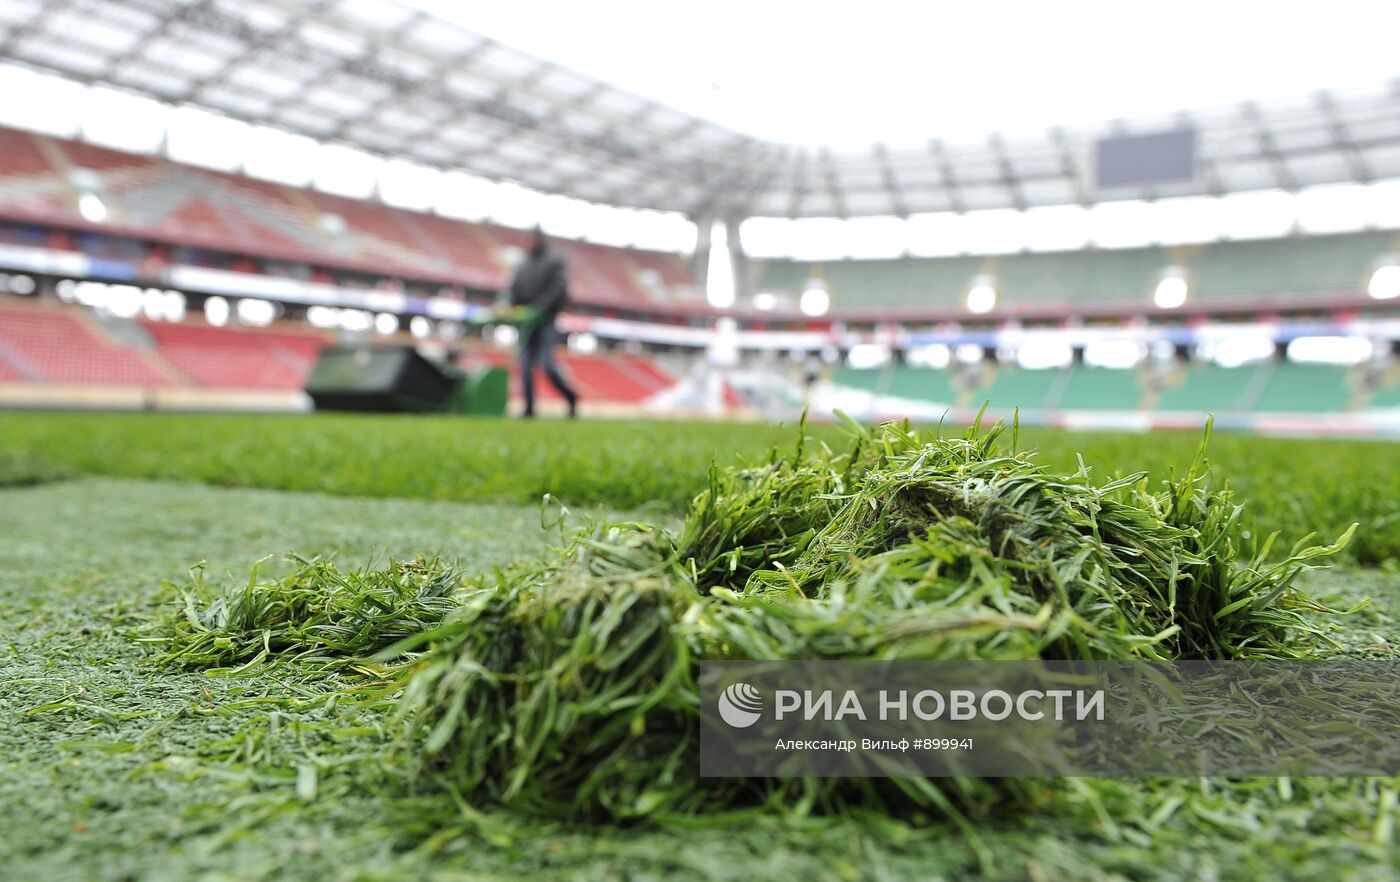 Новое травяное покрытие стадиона "Локомотив"